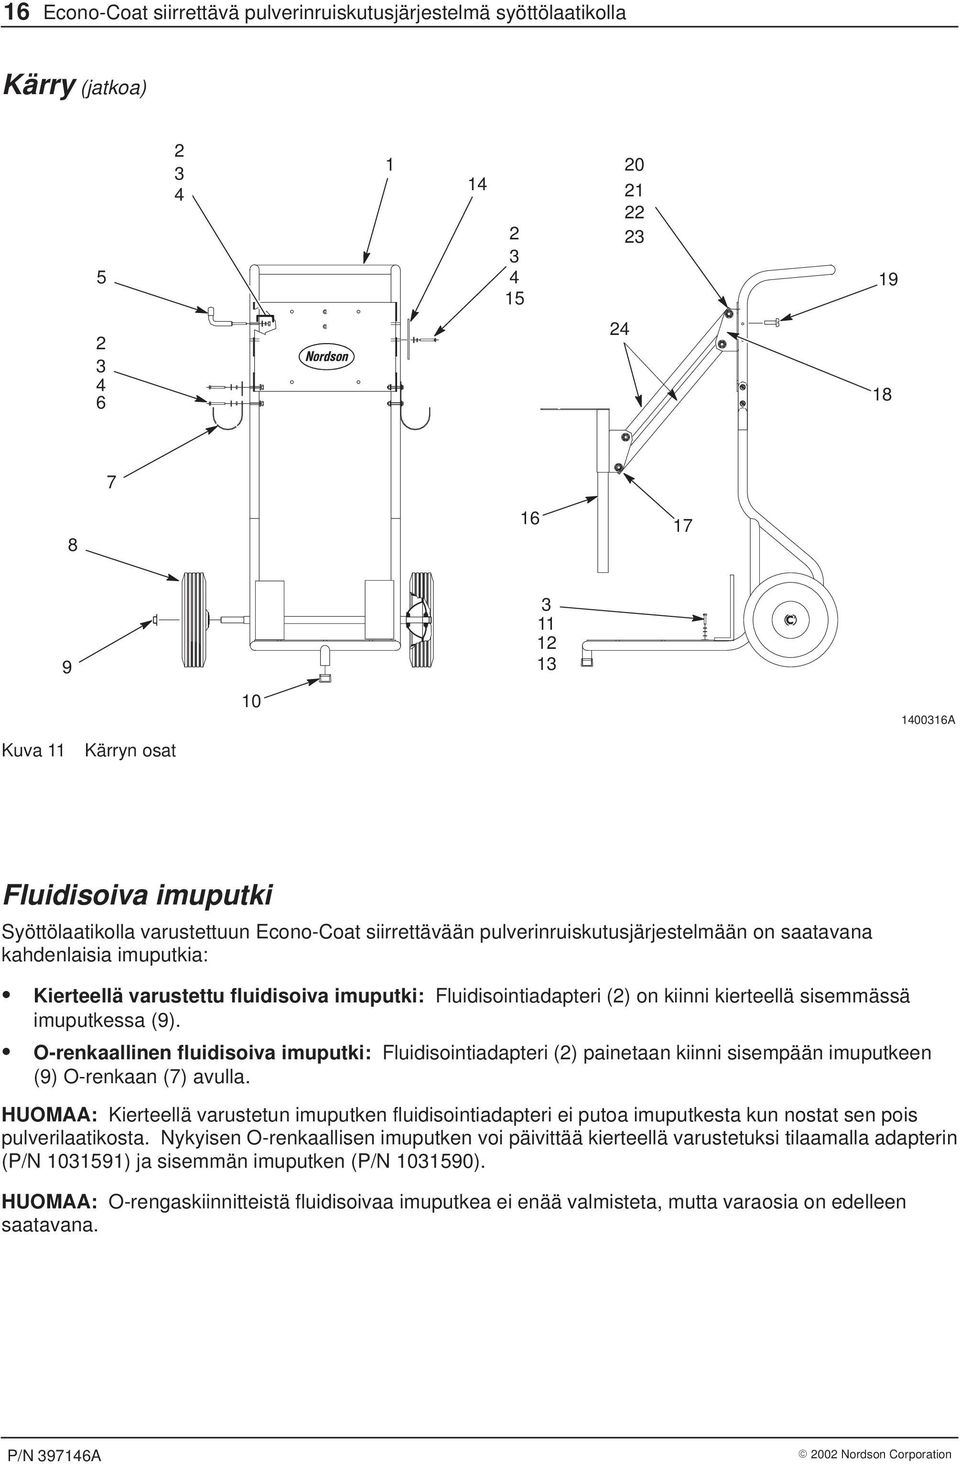 O-renkaallinen fluidisoiva imuputki: Fluidisointiadapteri () painetaan kiinni sisempään imuputkeen (9) O-renkaan (7) avulla.